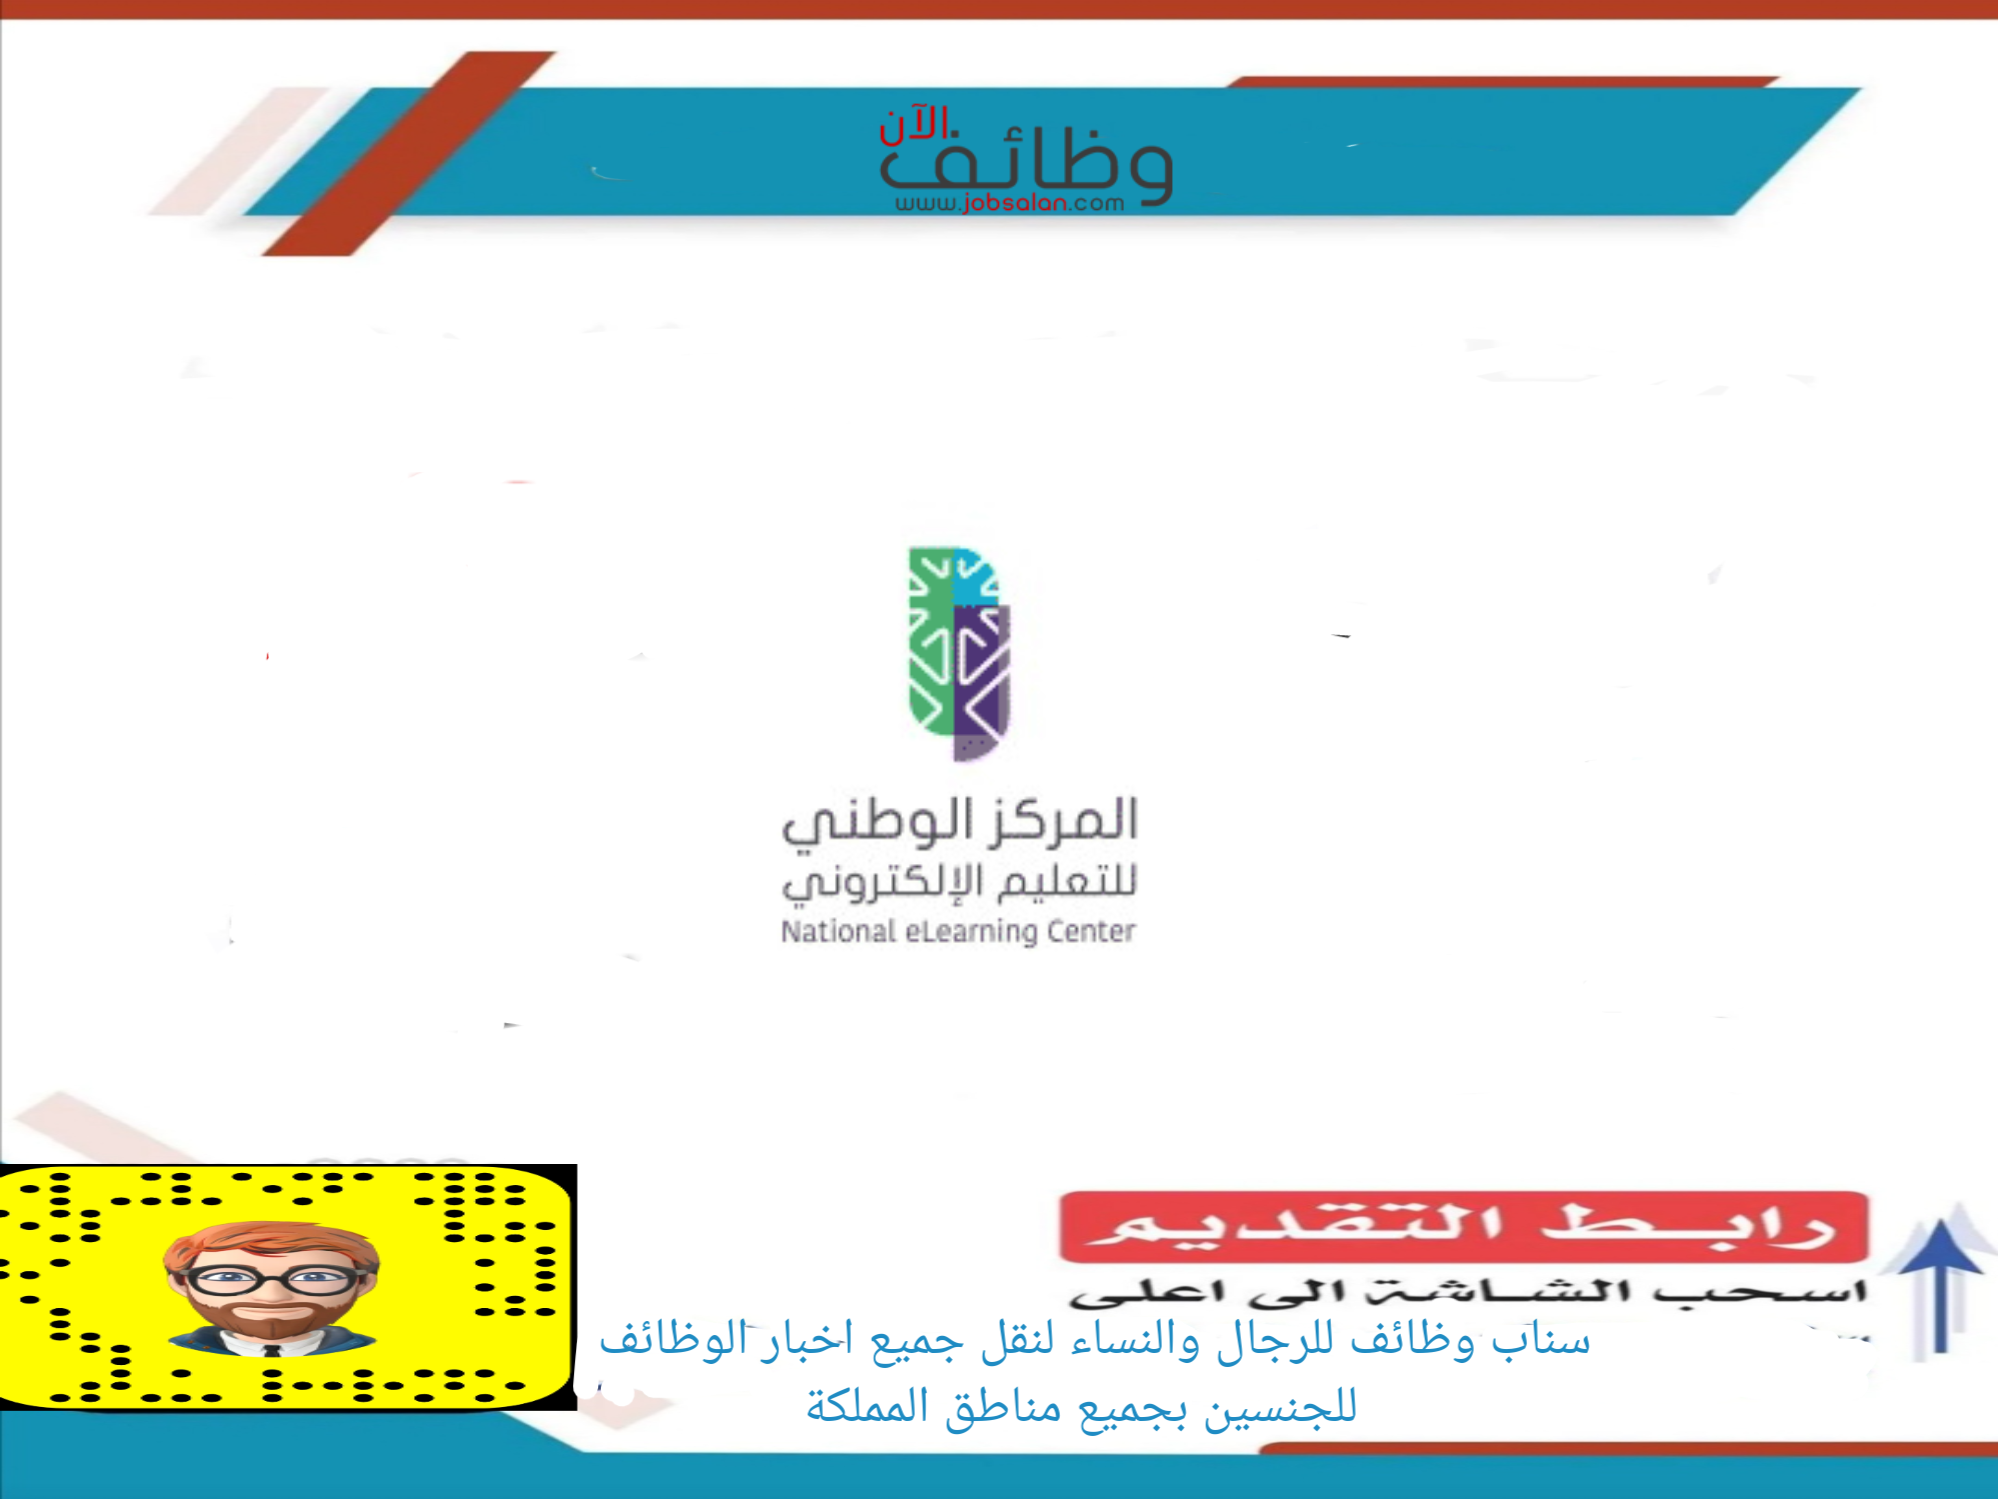 المركز الوطني للتعليم الإلكتروني 1 - مطلوب مندوب مشتريات في  المركز الوطني للتعليم الإلكتروني - الرياض